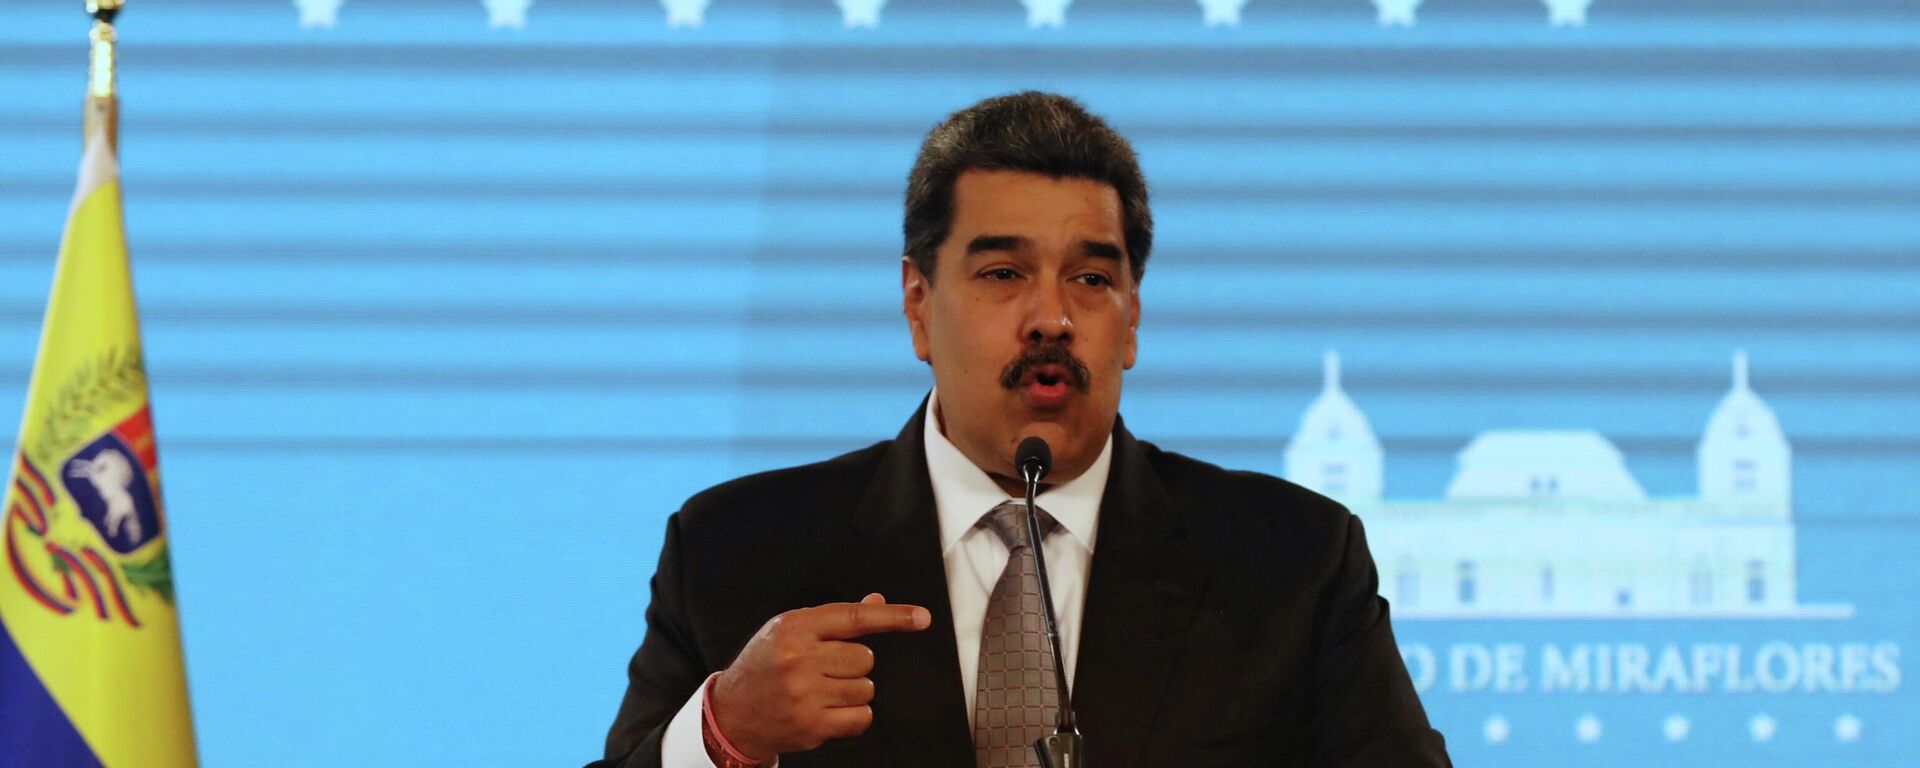 Nicolás Maduro, presidente de Venezuela - Sputnik Mundo, 1920, 20.08.2021